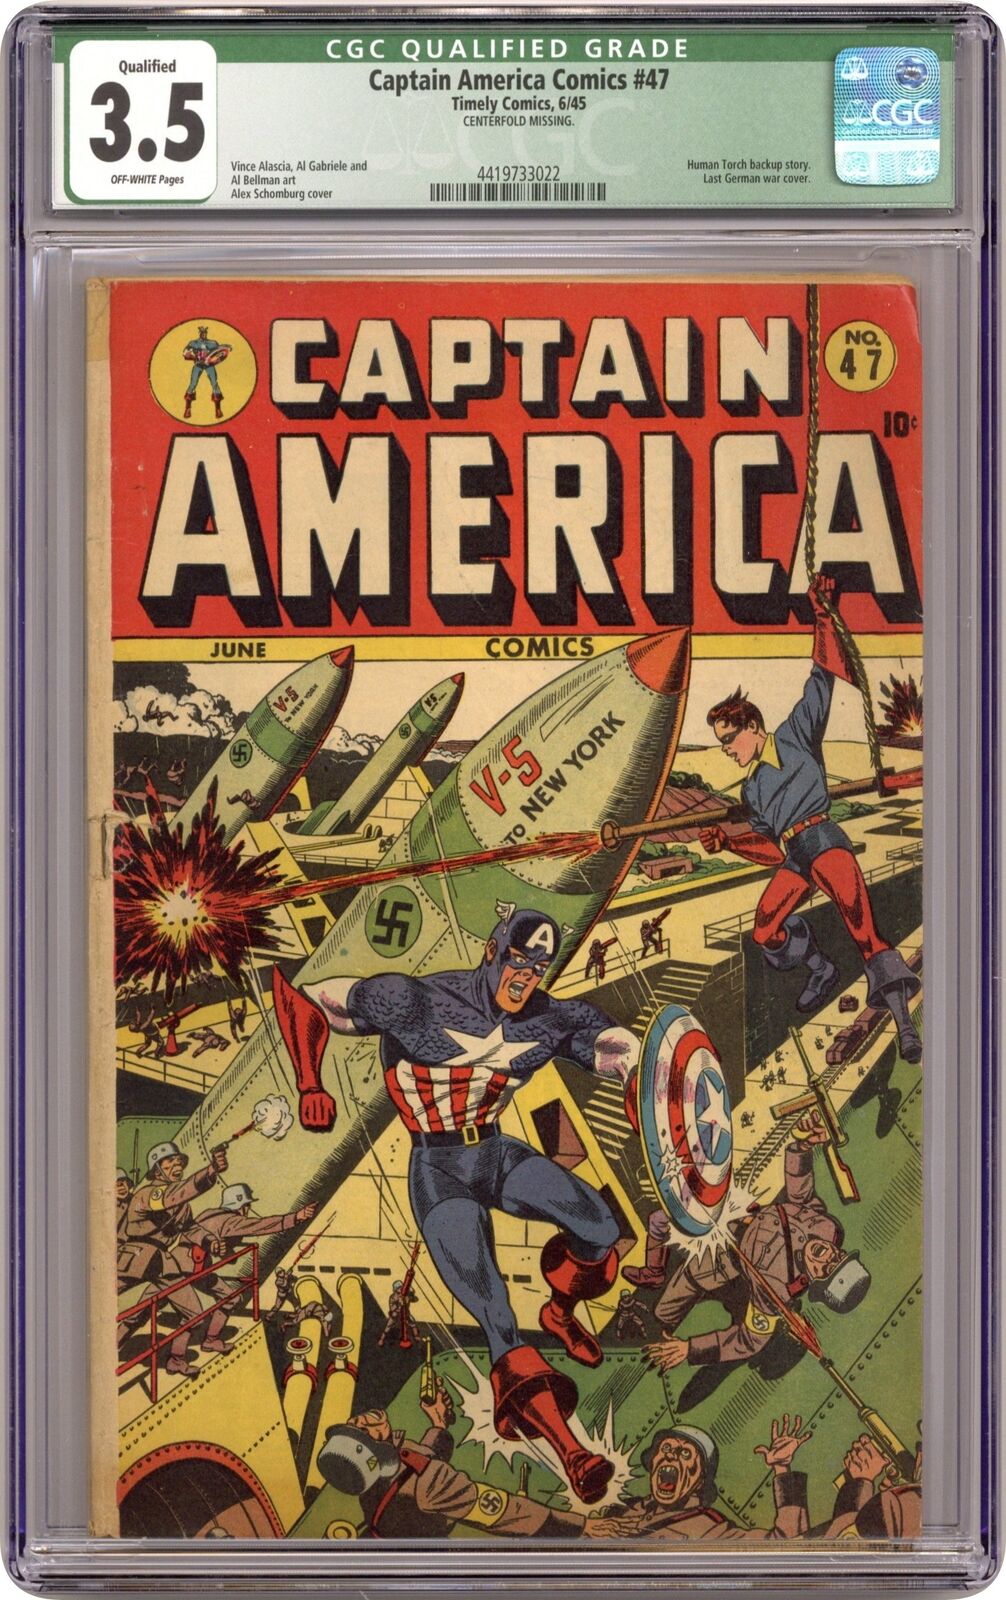 Captain America Comics #47 CGC 3.5 QUALIFIED 1945 4419733022